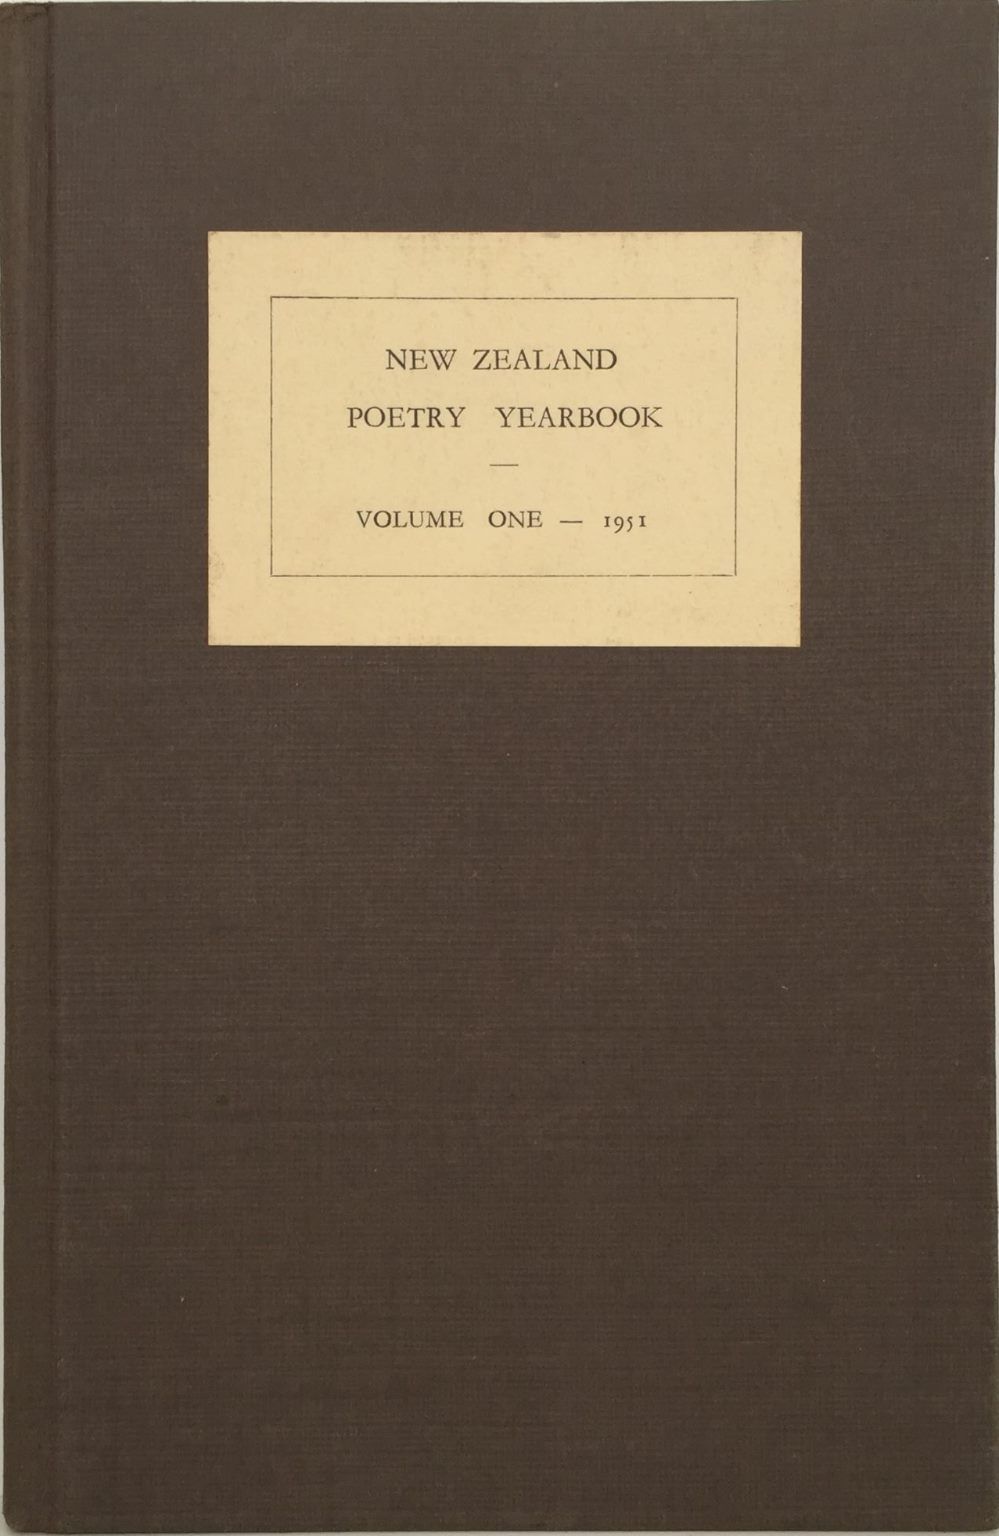 NEW ZEALAND POETRY YEARBOOK: Volume 1